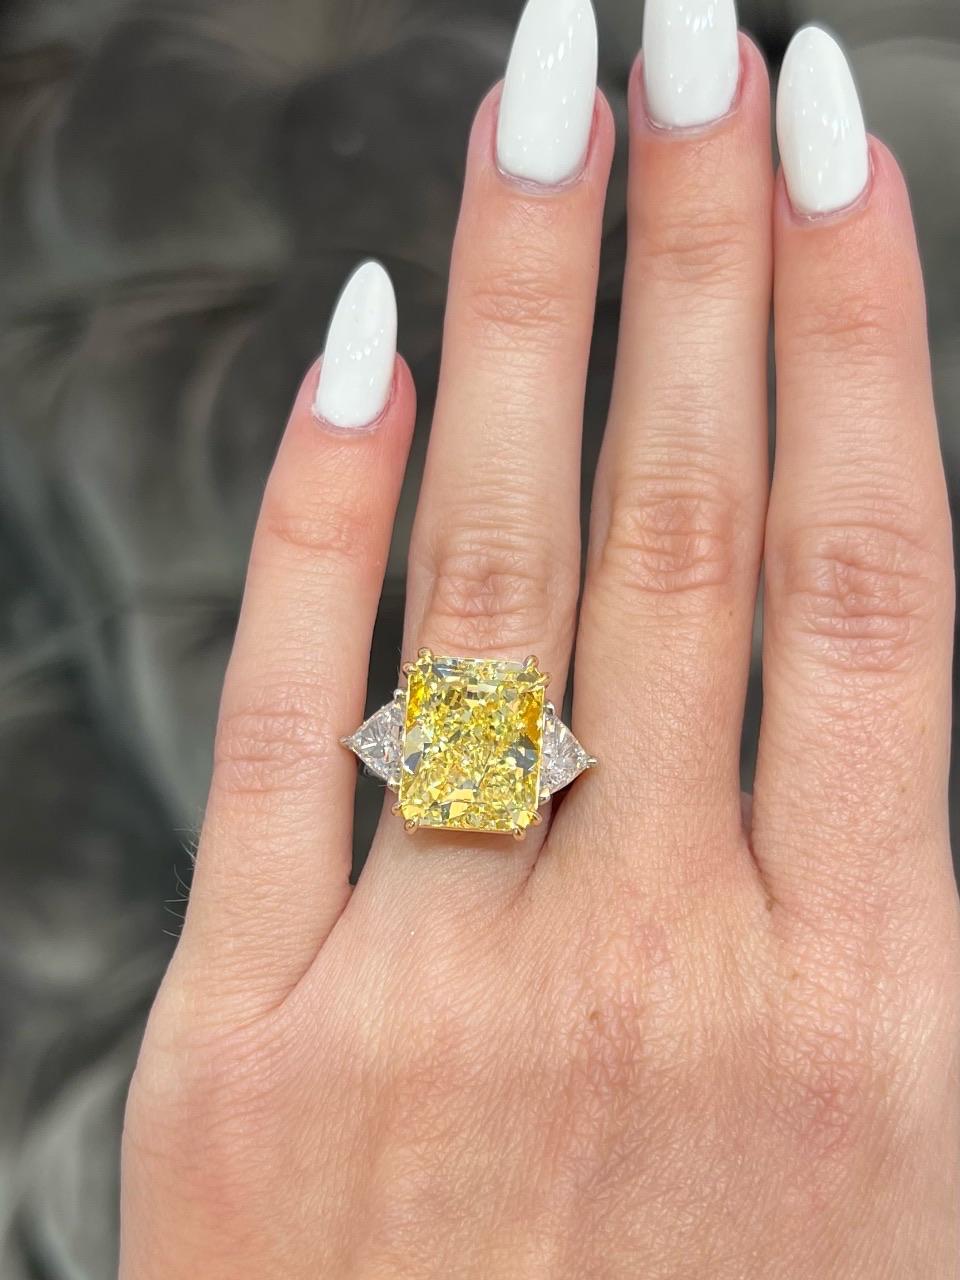 David Rosenberg 10.41 Radiant Fancy Yellow VS1 GIA Diamond Engagement Ring For Sale 5